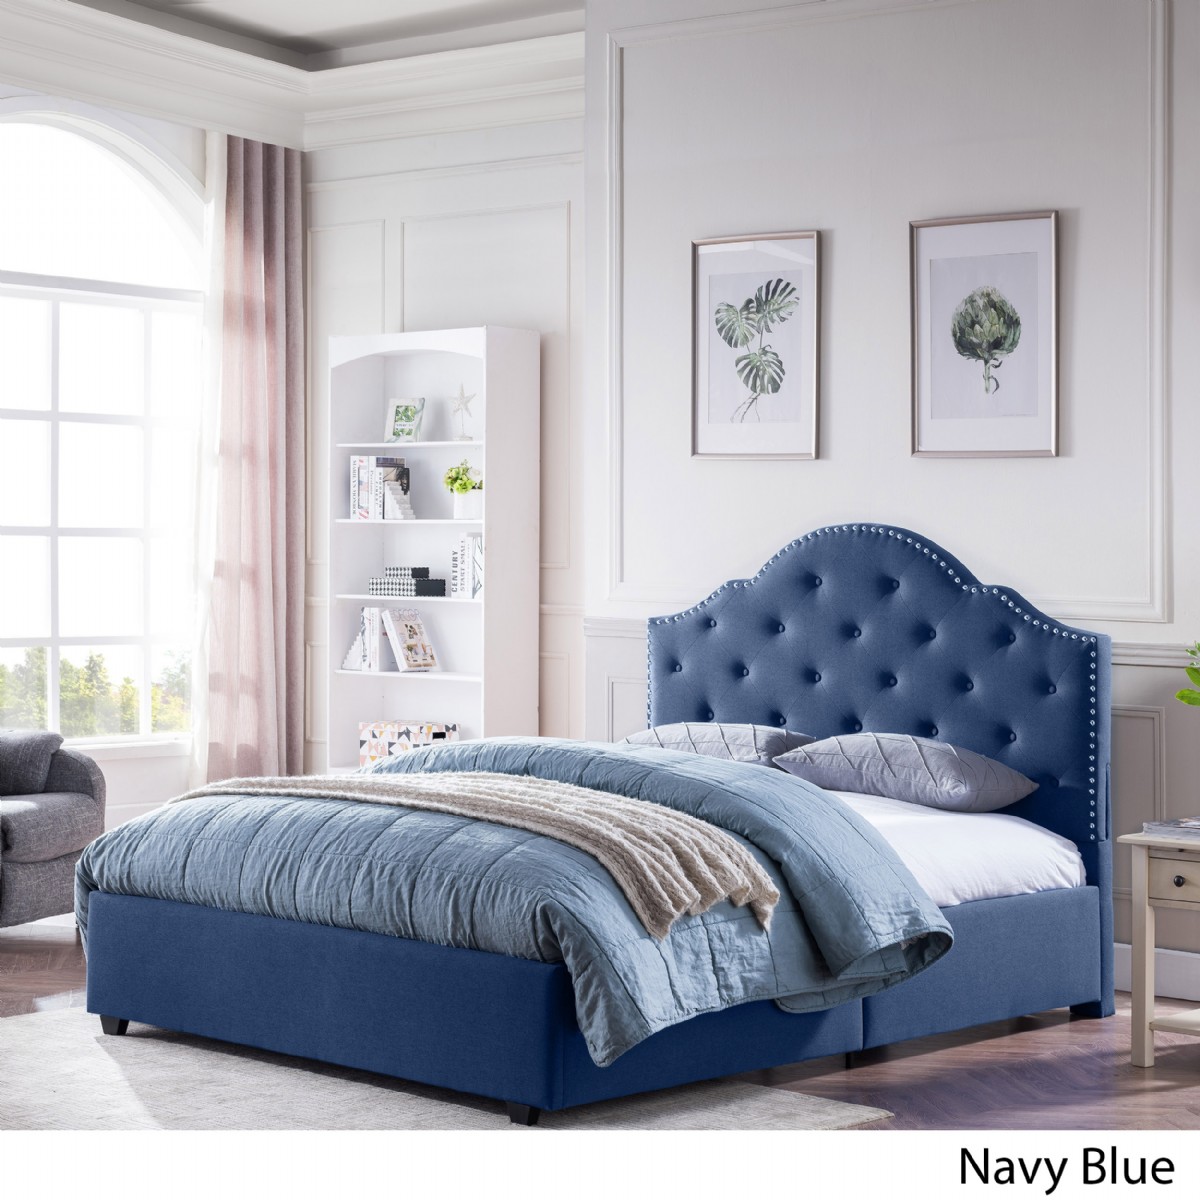 Mavi Bej Desenli Yatak Başucu Çift Kişilik Karyola Takımı Yatak Odası